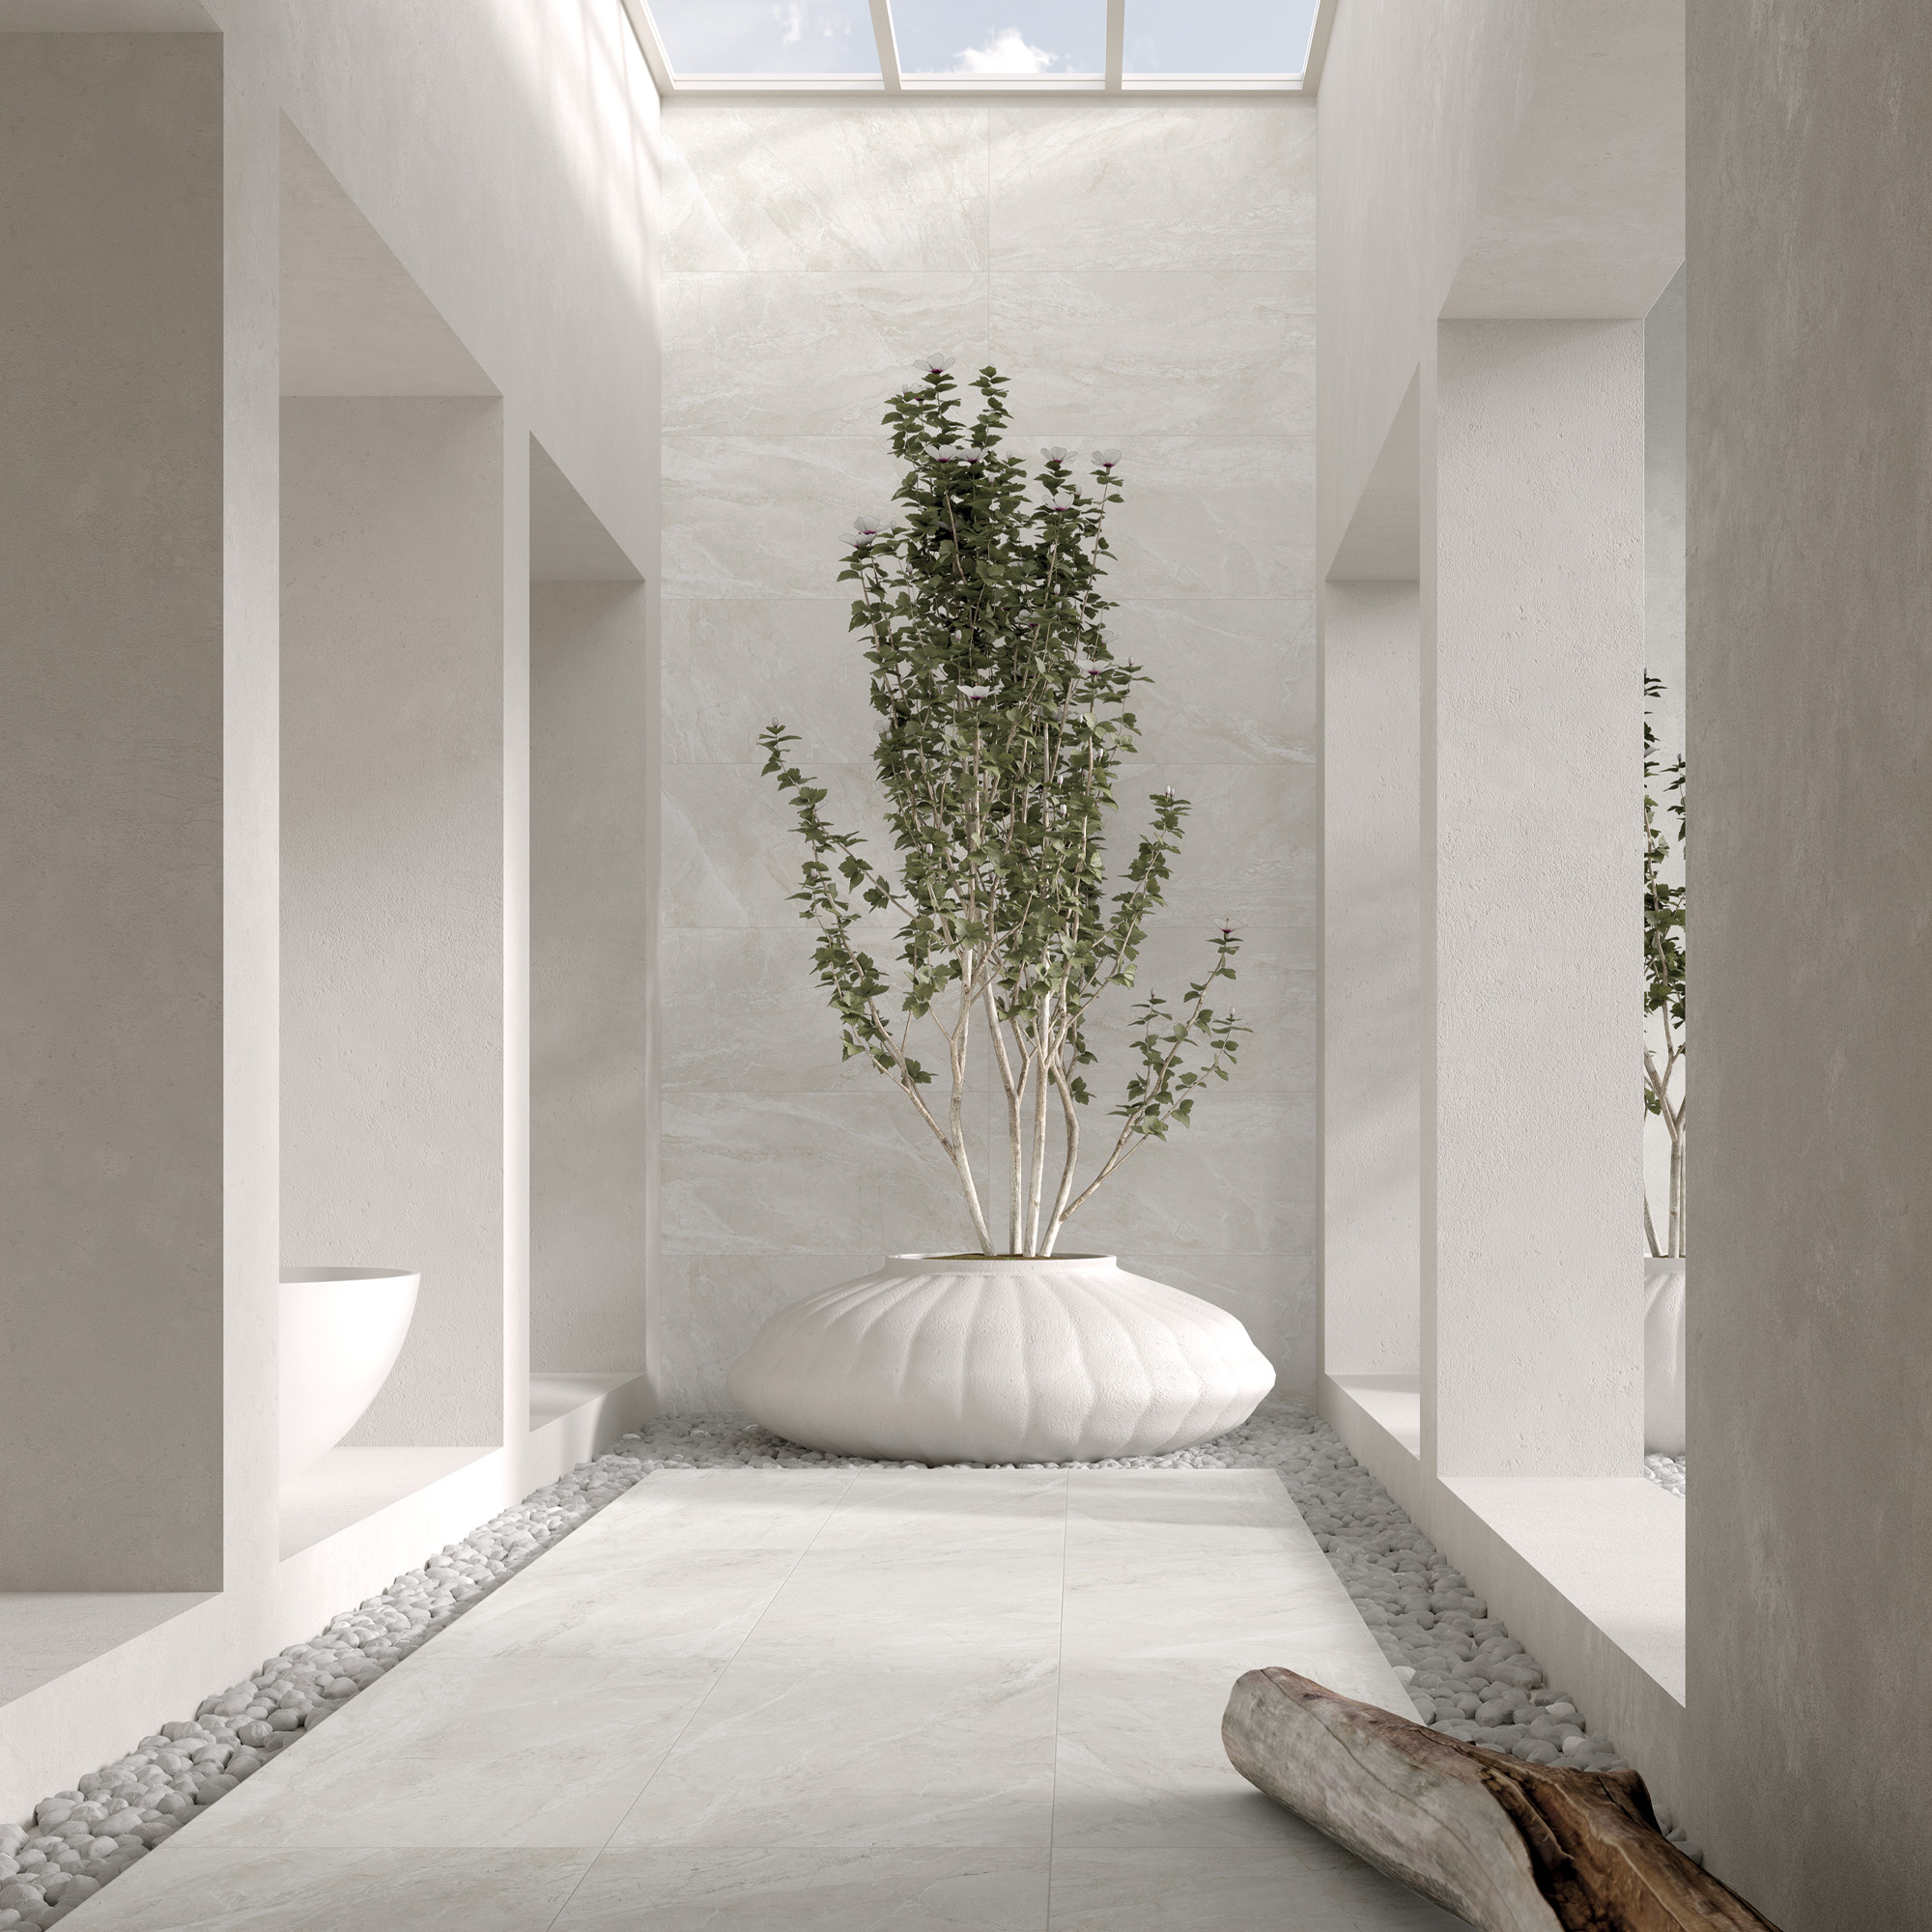 tile-sammys-designer-flooring-moonstone-white-mood-decor-idea